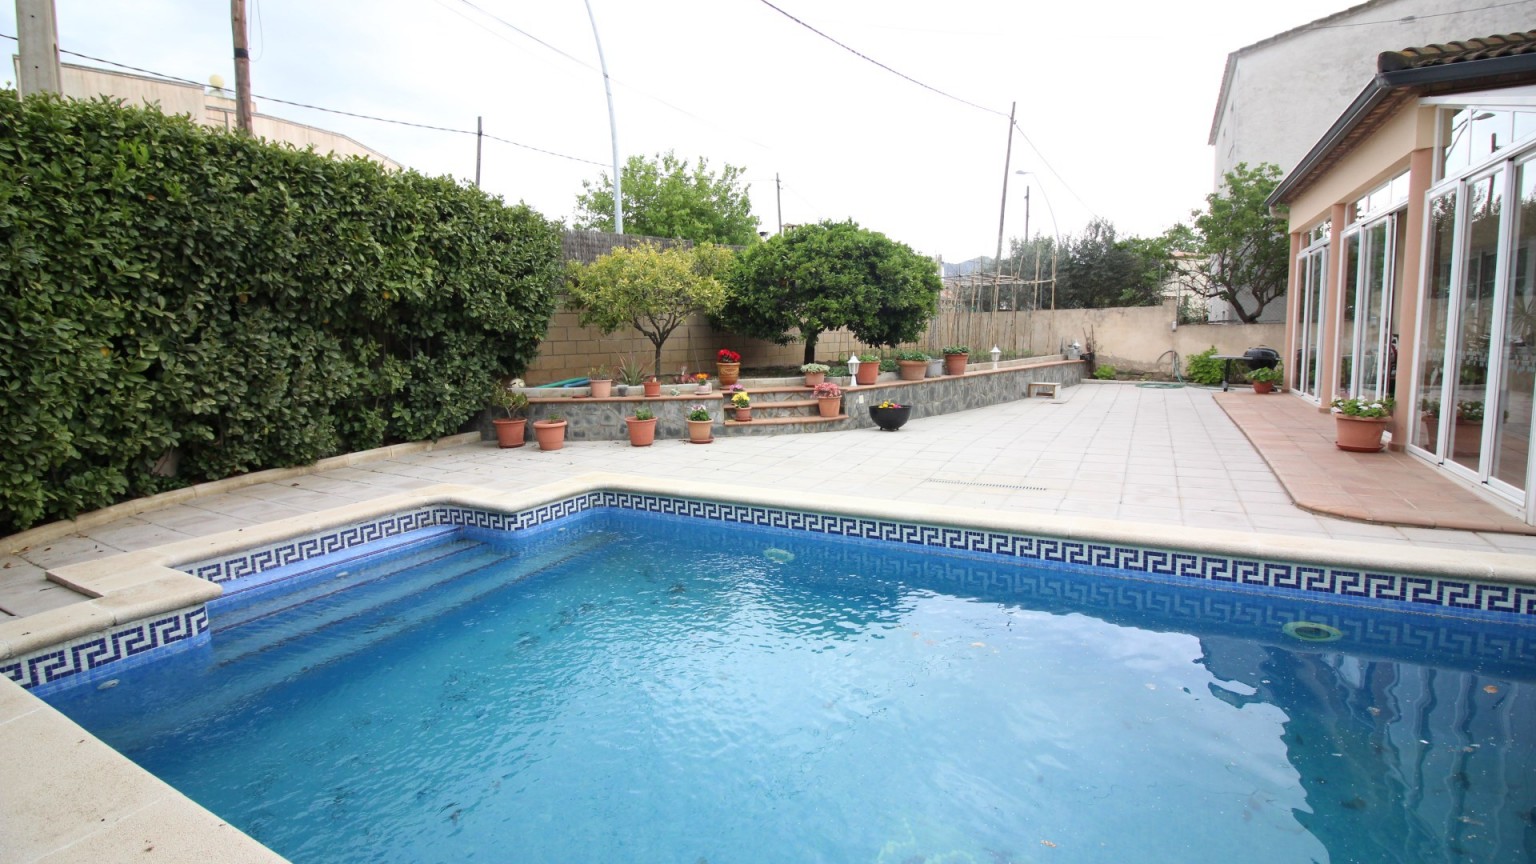 A vendre maison de 3 étages à Mas Mates (Roses). Composée de 5 chambres et 3 salles de bains. Avec piscine privé, un jardin à l’avant et à l’arrière, un verger et un garage très grand.